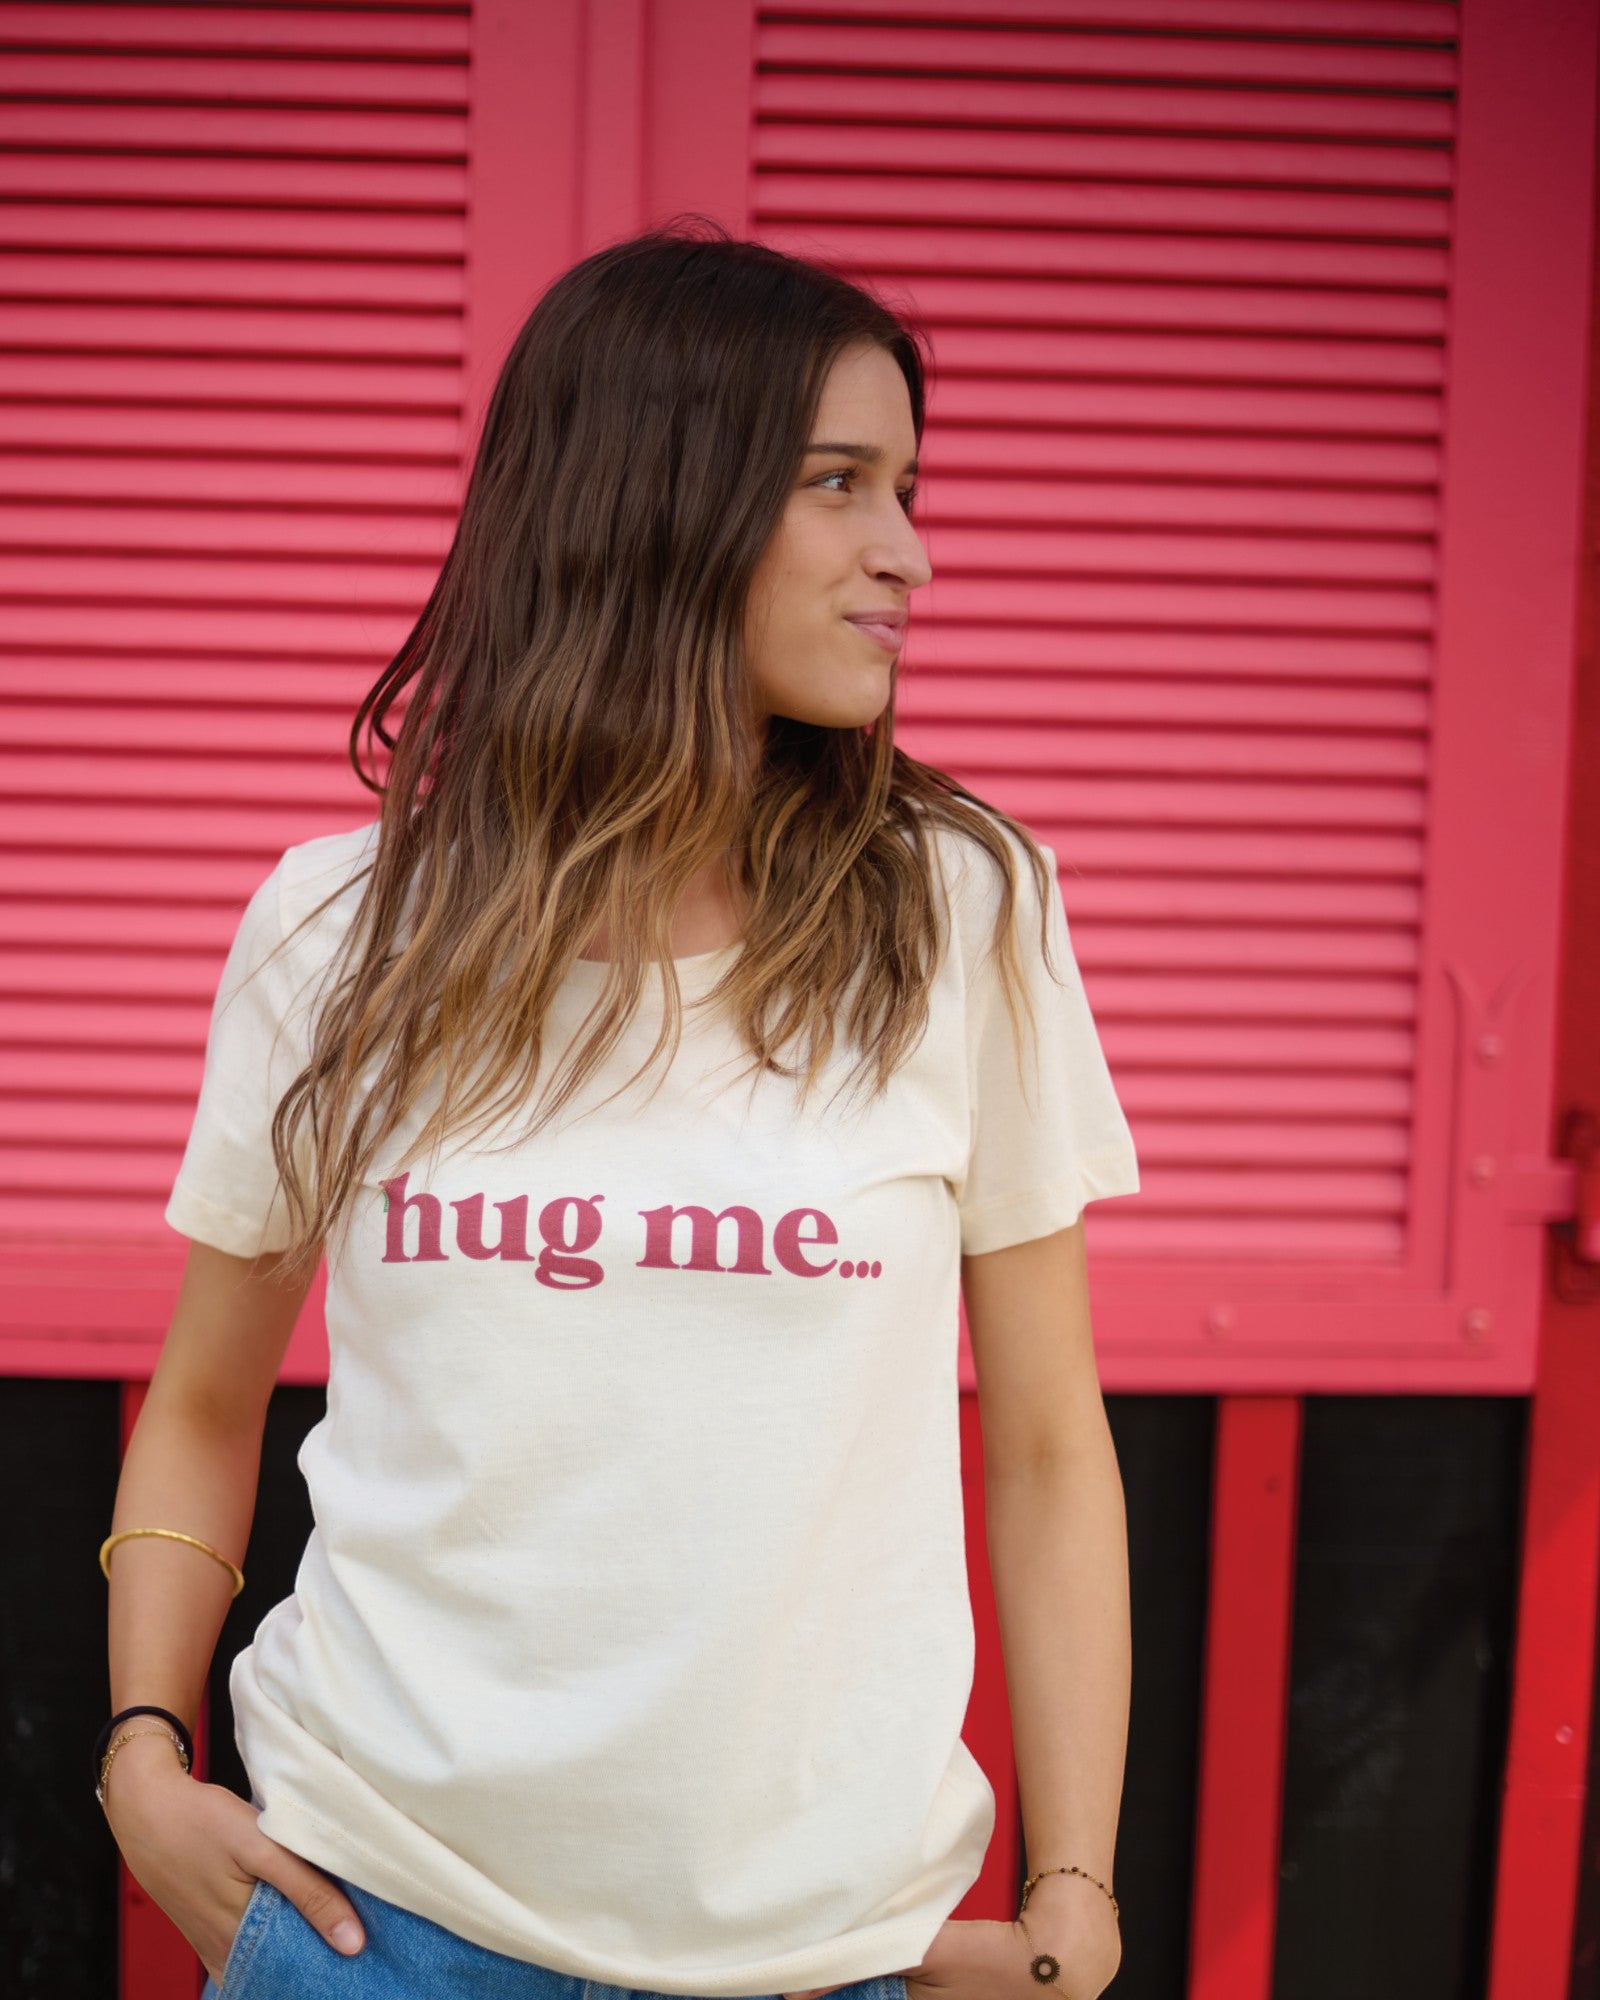 hug me...